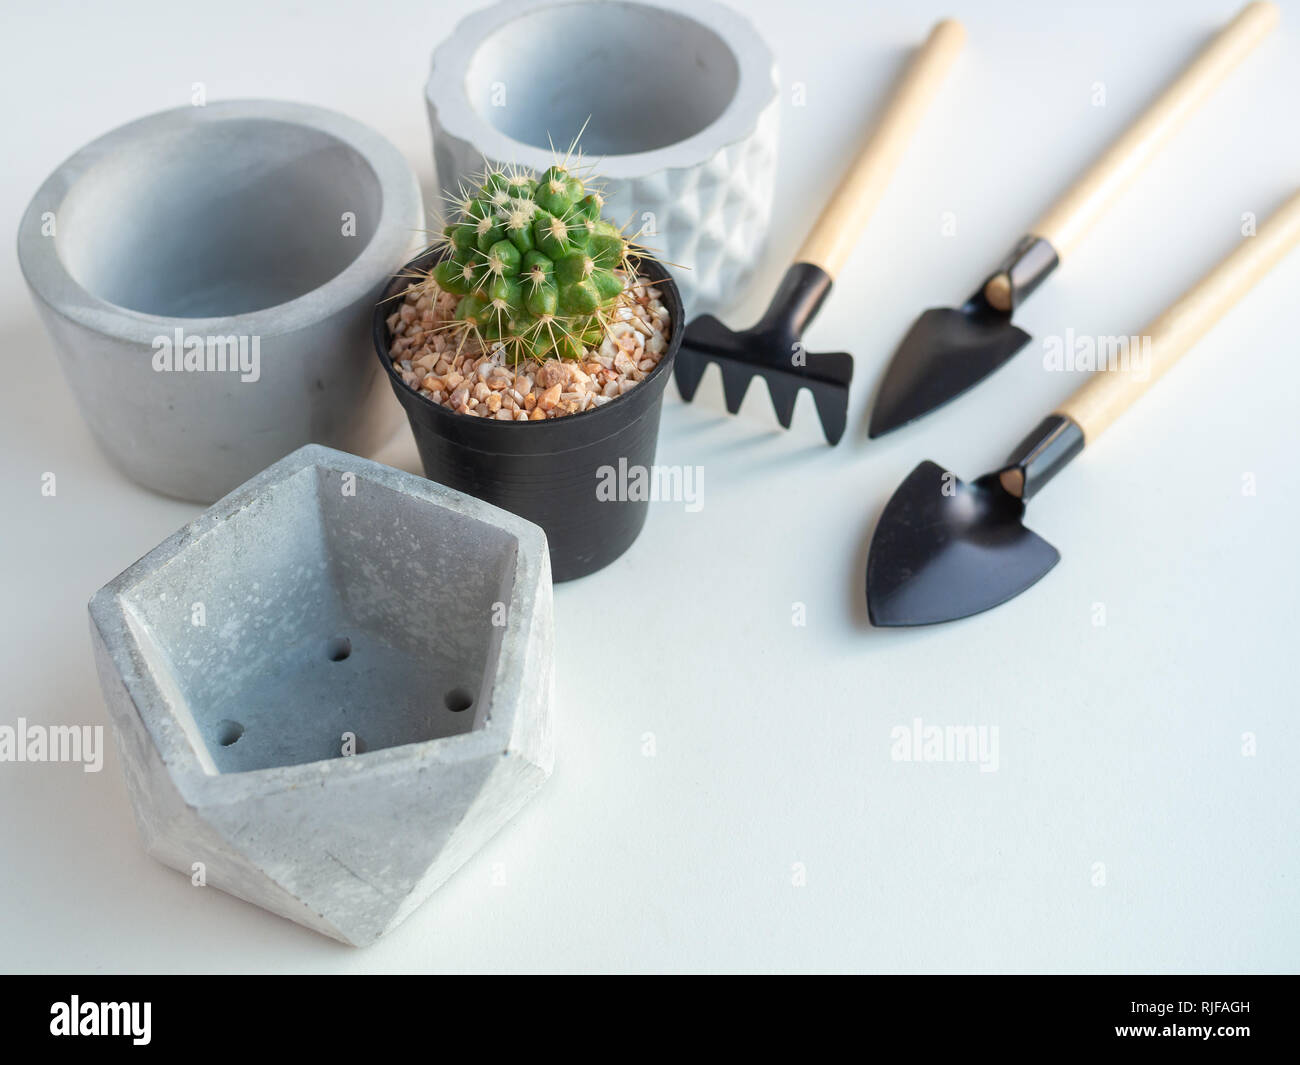 Cactus en pot en plastique noir avec béton géométrique vide des jardinières et jeu d'outils de jardin sur fond blanc avec l'espace, de l'agriculture copie concept. Banque D'Images